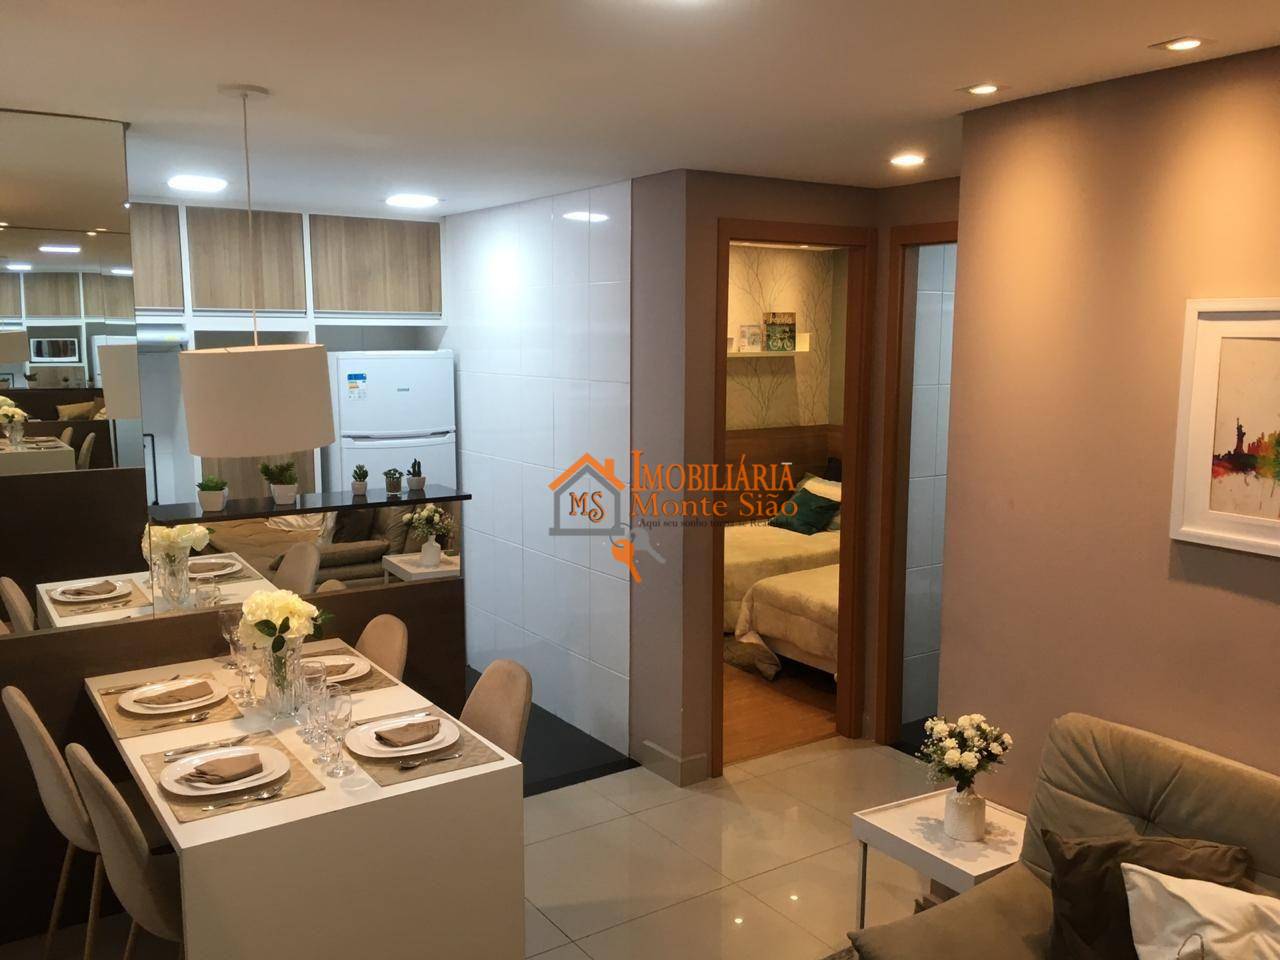 Apartamento para compra no Residencial Golden City com 2 dormitórios à venda, 38 m² por R$ 2519000- Jardim Rosa de Franca - Guarulhos/SP